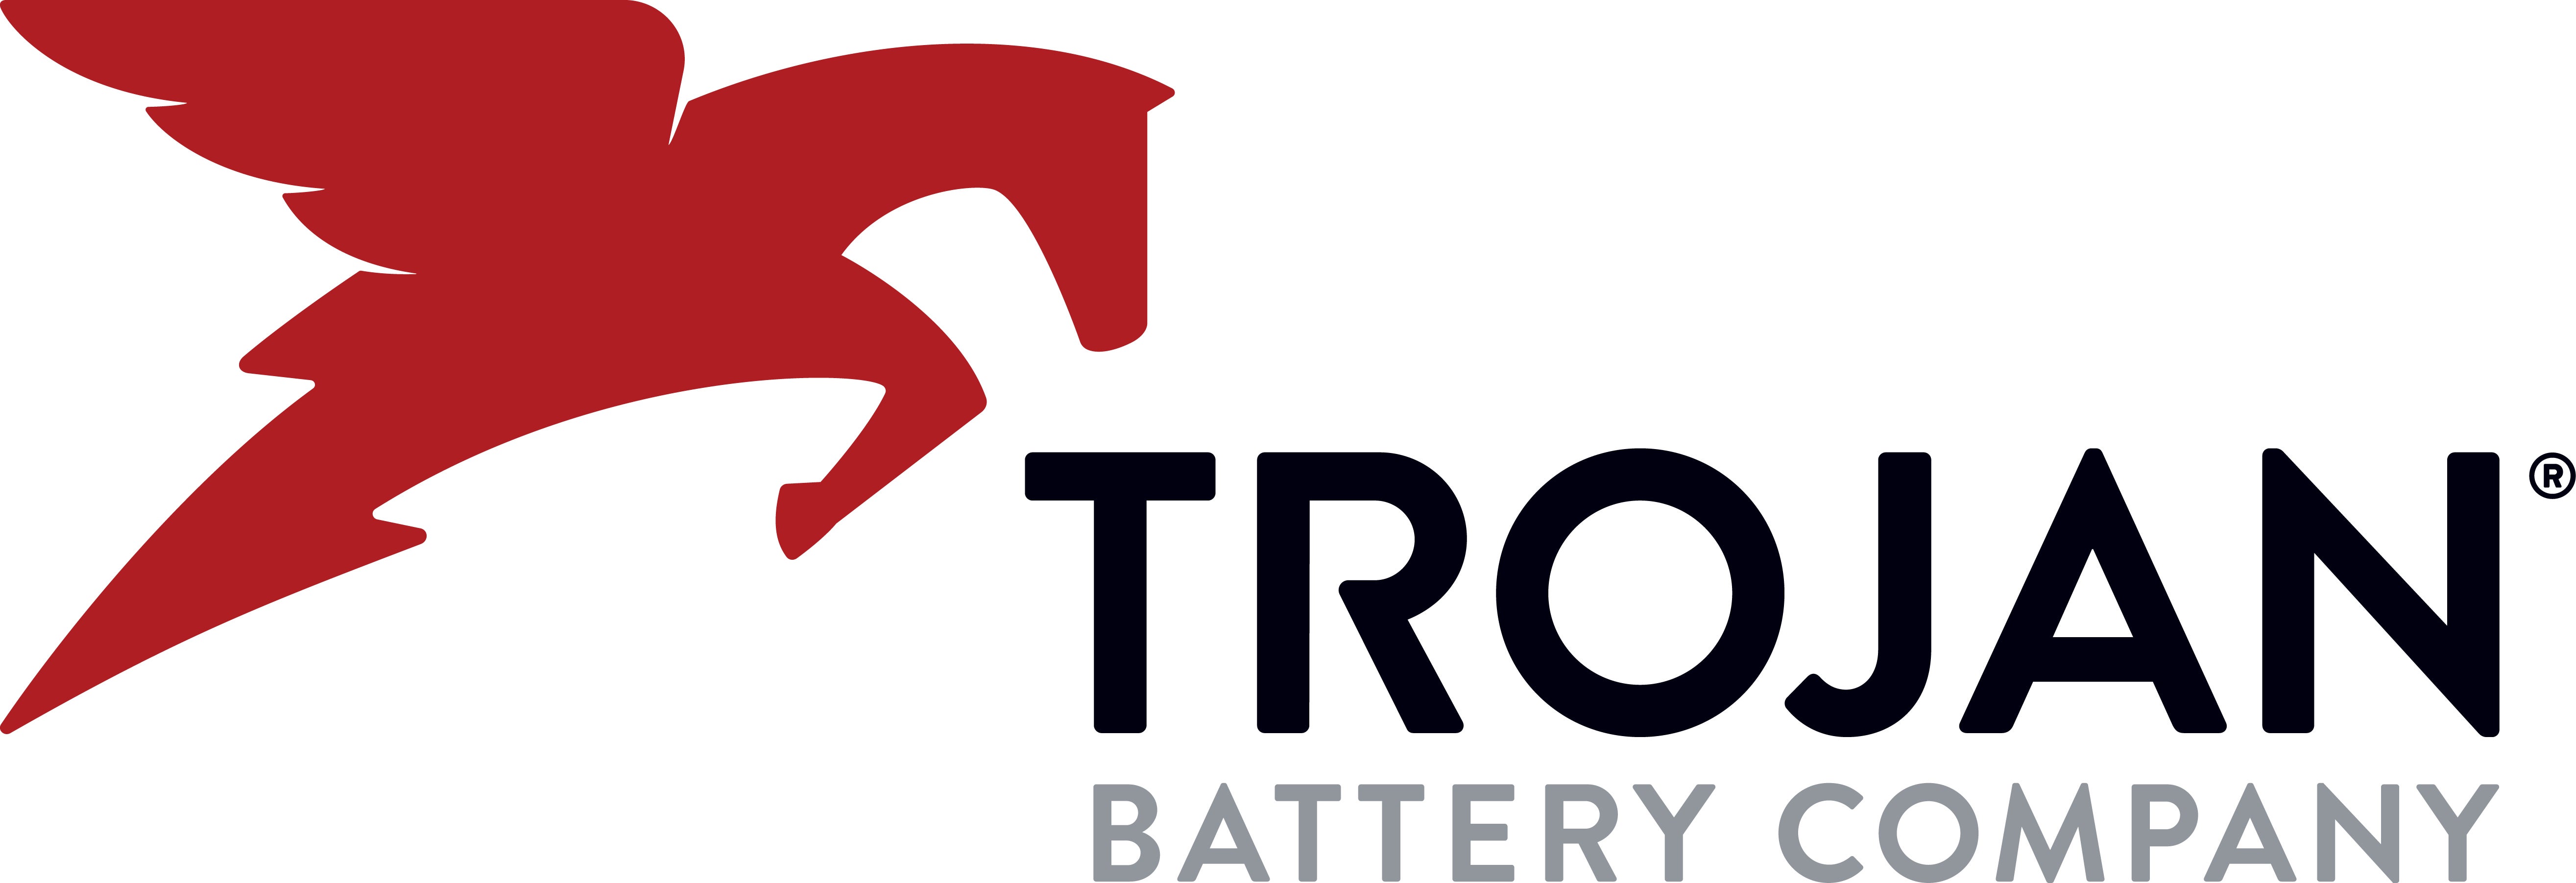 Trojan Battery Company logo